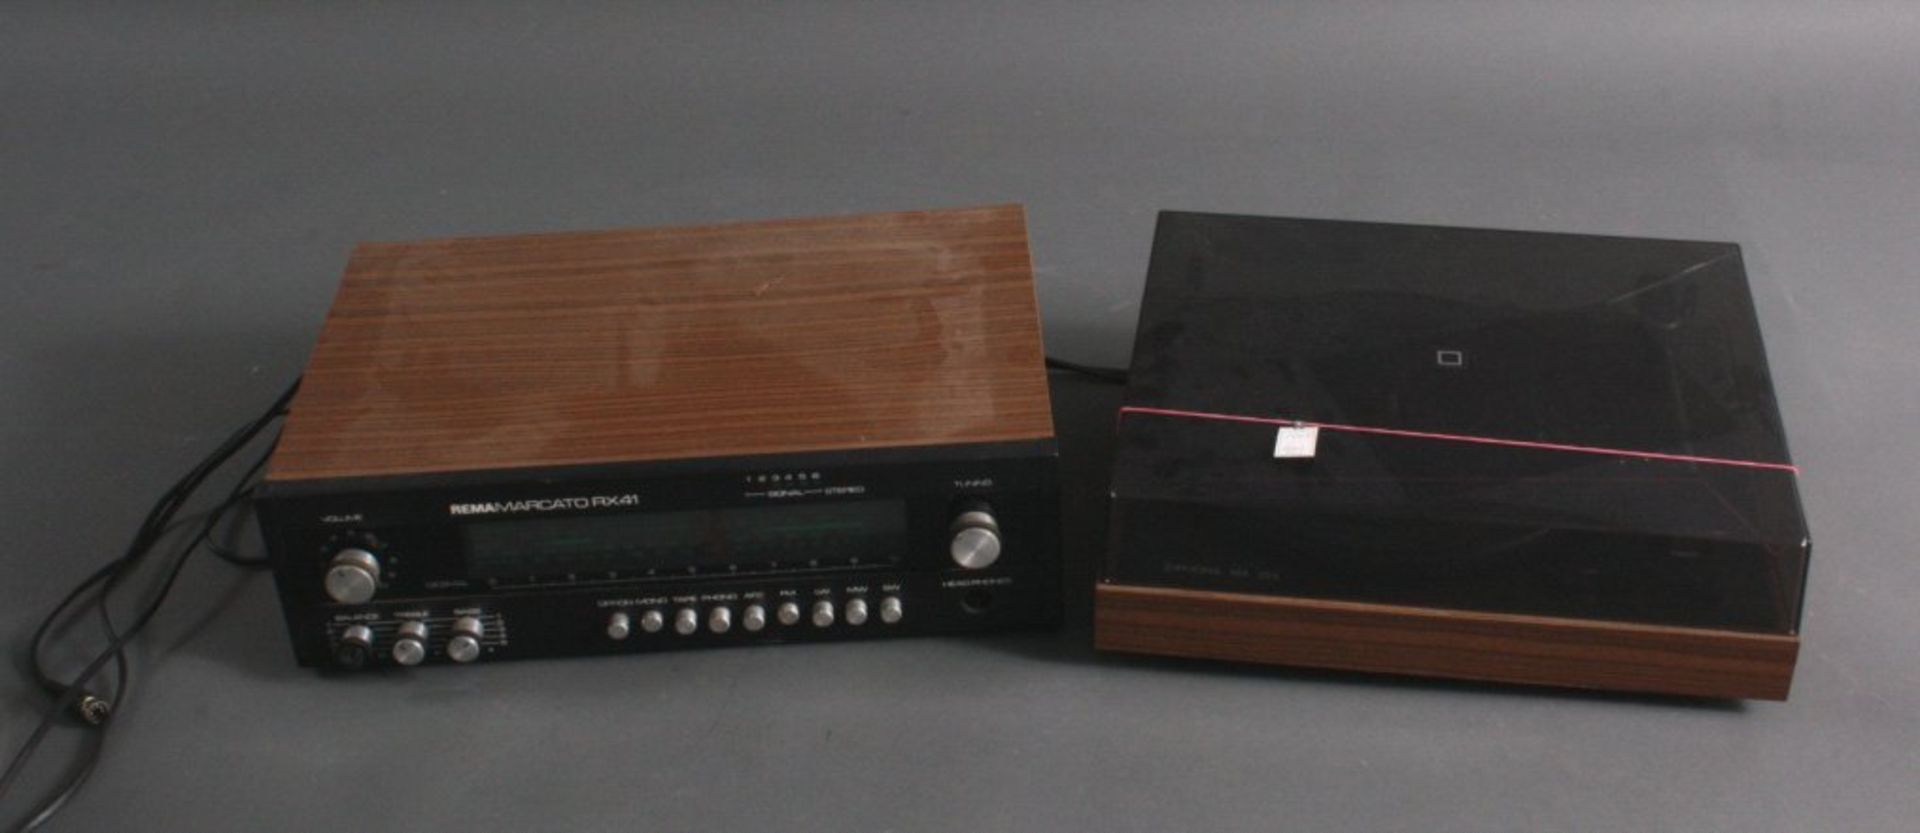 Stereoanlage aus den 70er JahrenHersteller Rema, Modell Marcato RX41 und ein PlattenspielerZiphona